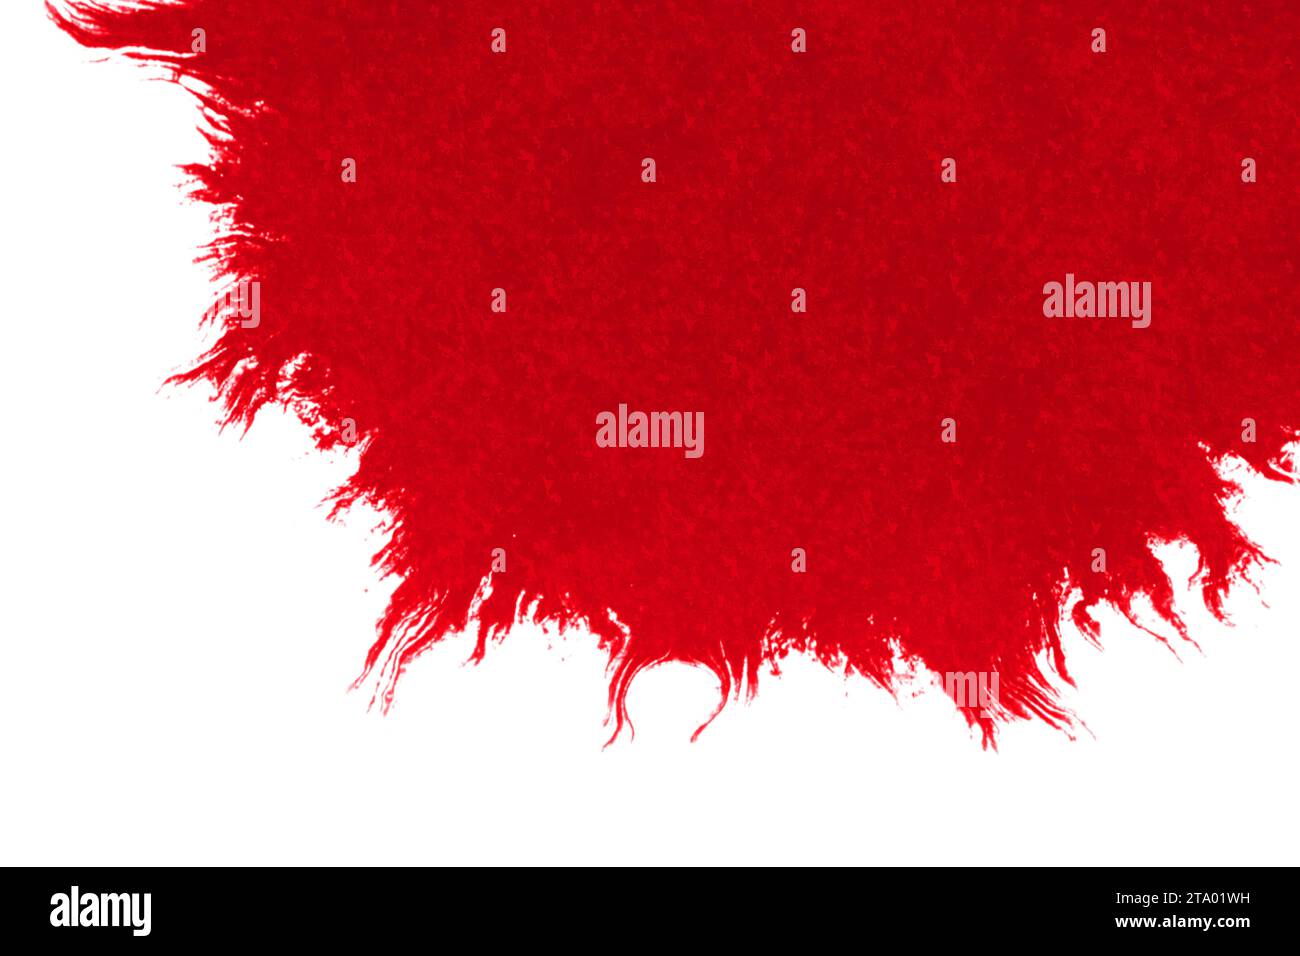 Abstrakte rote Bluttinte Aquarellspritzer Spritzer auf weißem Hintergrund, gefährlichem Horror oder medizinischem Gesundheitskonzept Stockfoto